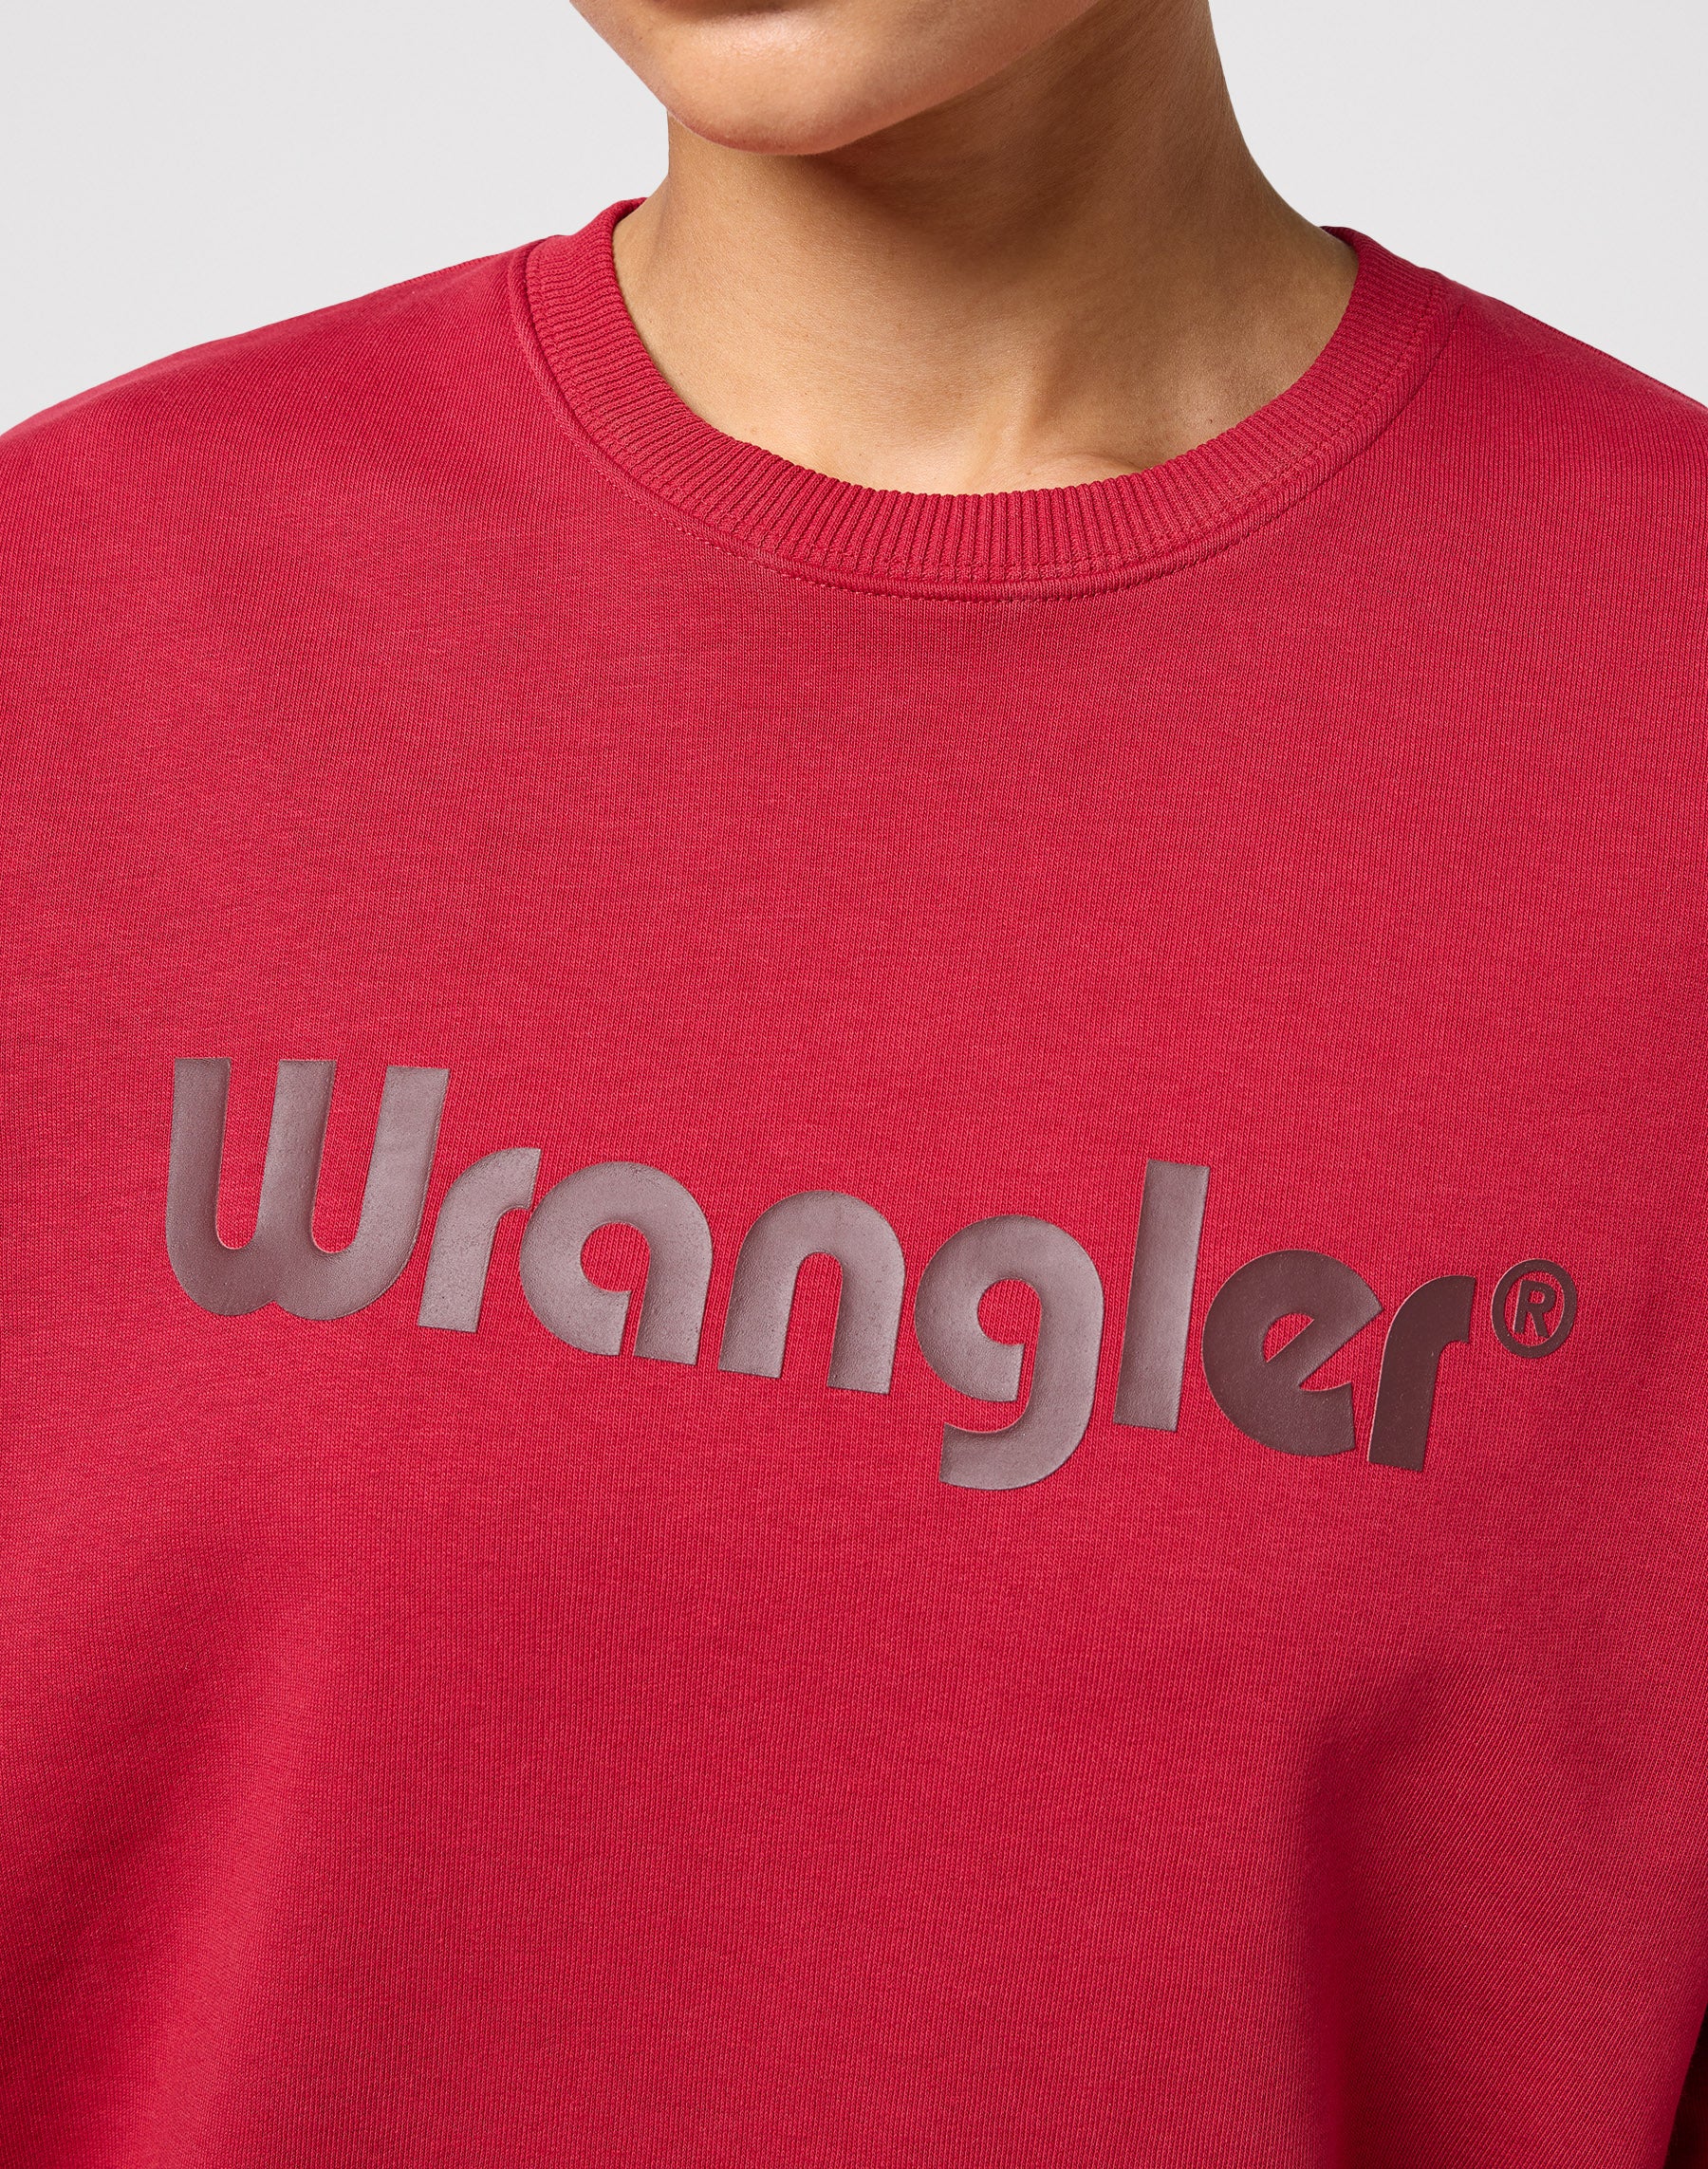 Crew Sweatshirt in Red Sweatshirts Wrangler   